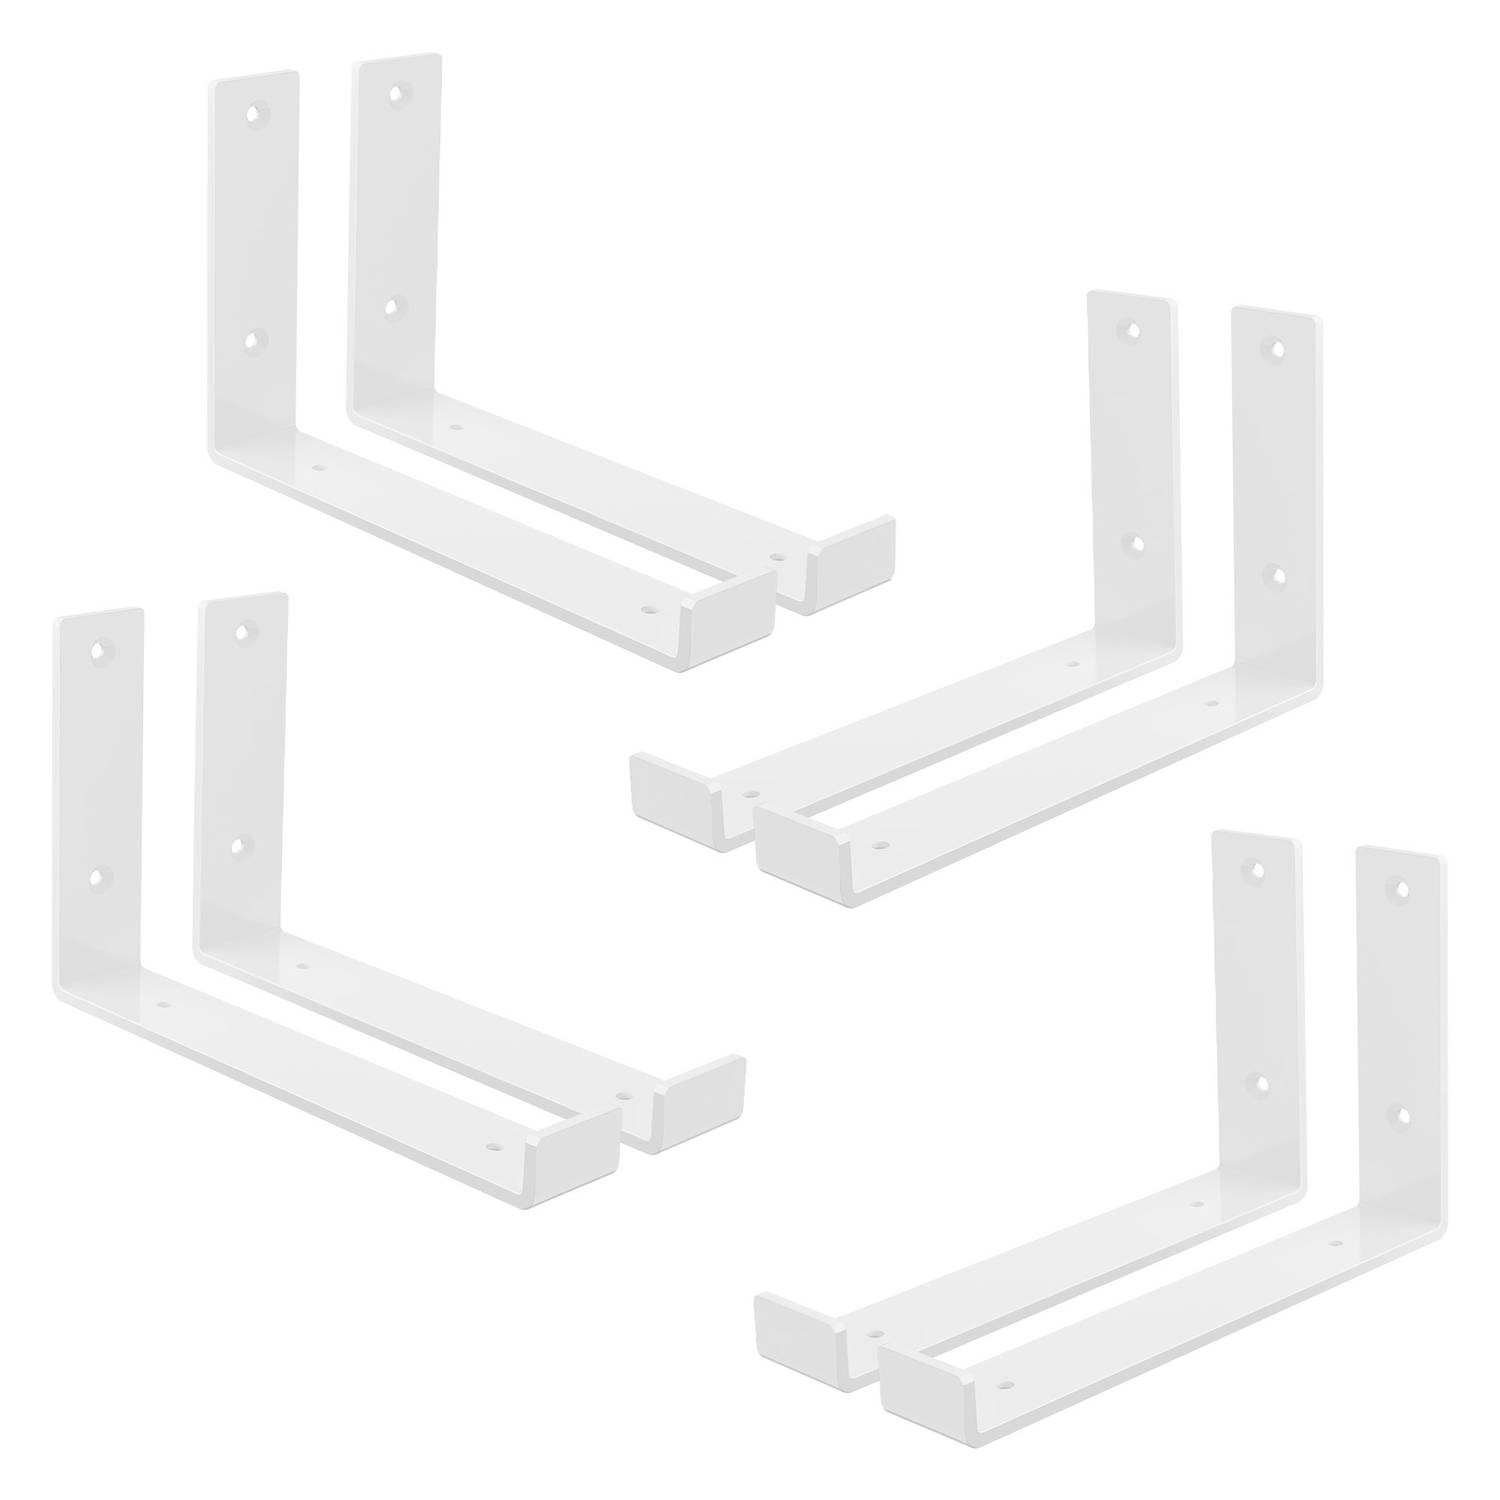 ML-Design 8 stuks plankbeugel 25x4x14 cm, wit, gemaakt van metaal, 10 inch plankbeugels, industriële plankbeugels, planksteun voor wandmontage, 90 graden wandbeugel, L-vormige wand